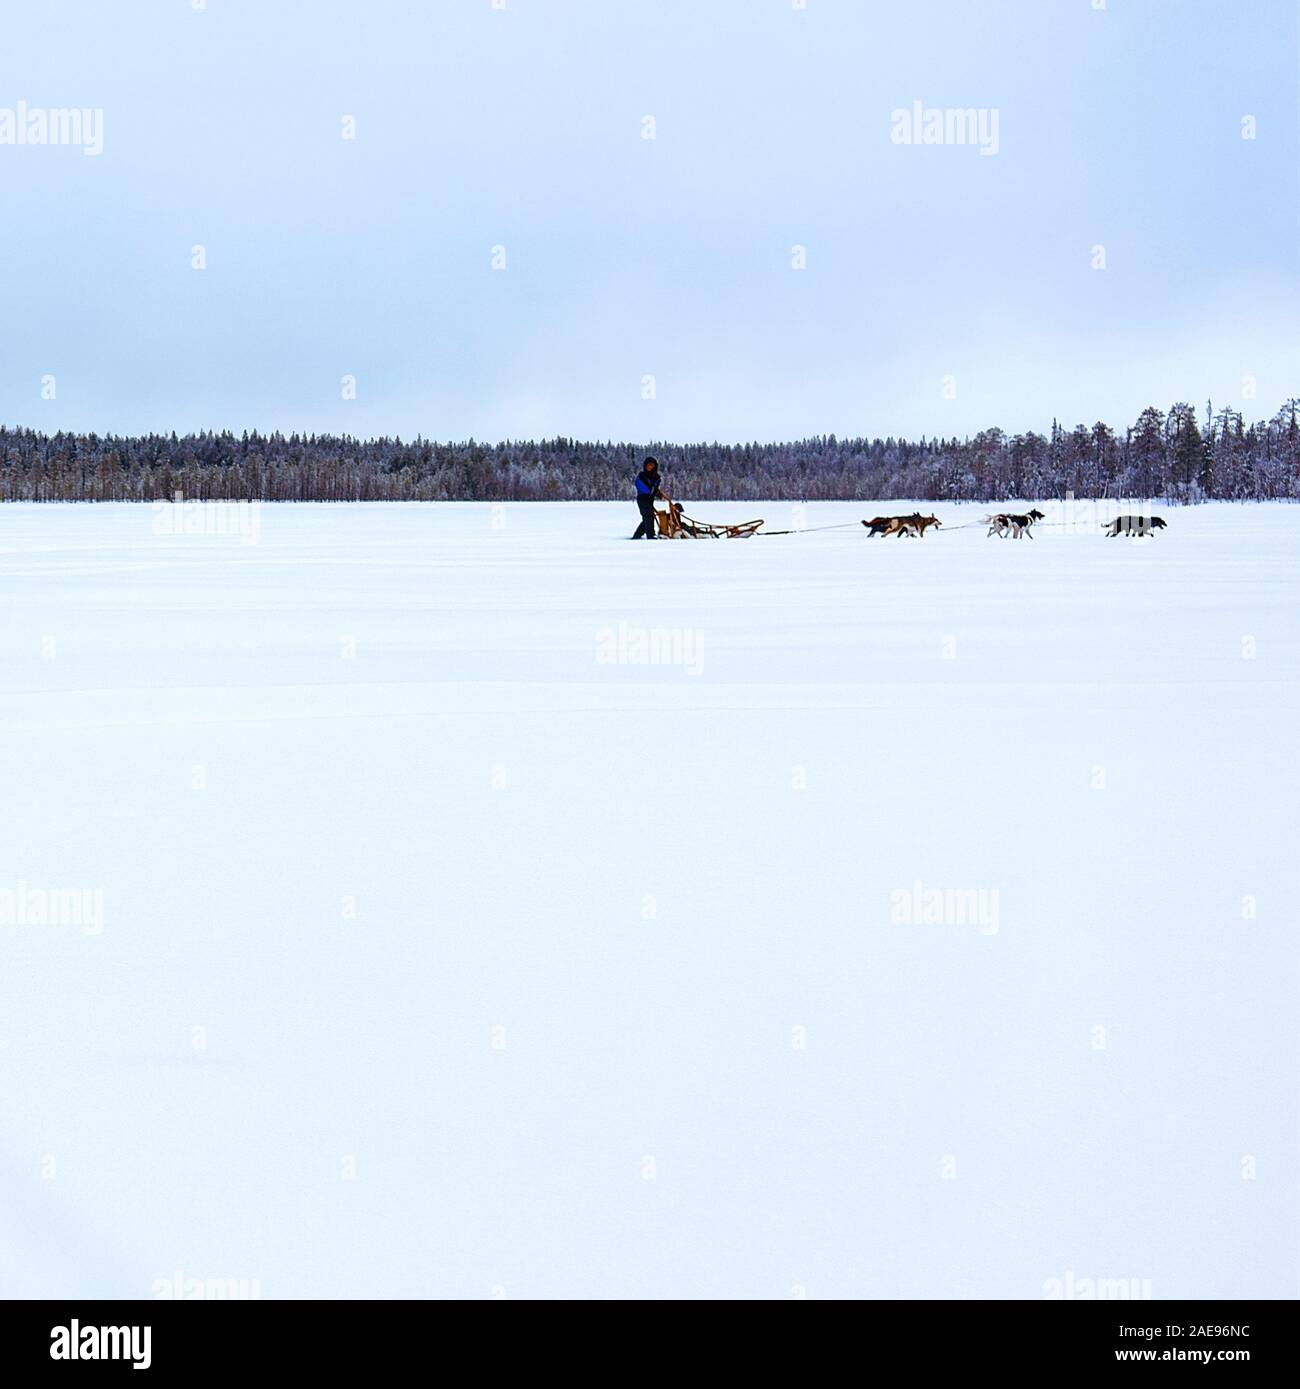 Traîneau à chiens Husky sur le lac gelé en hiver Laponie Finlande reflex Banque D'Images